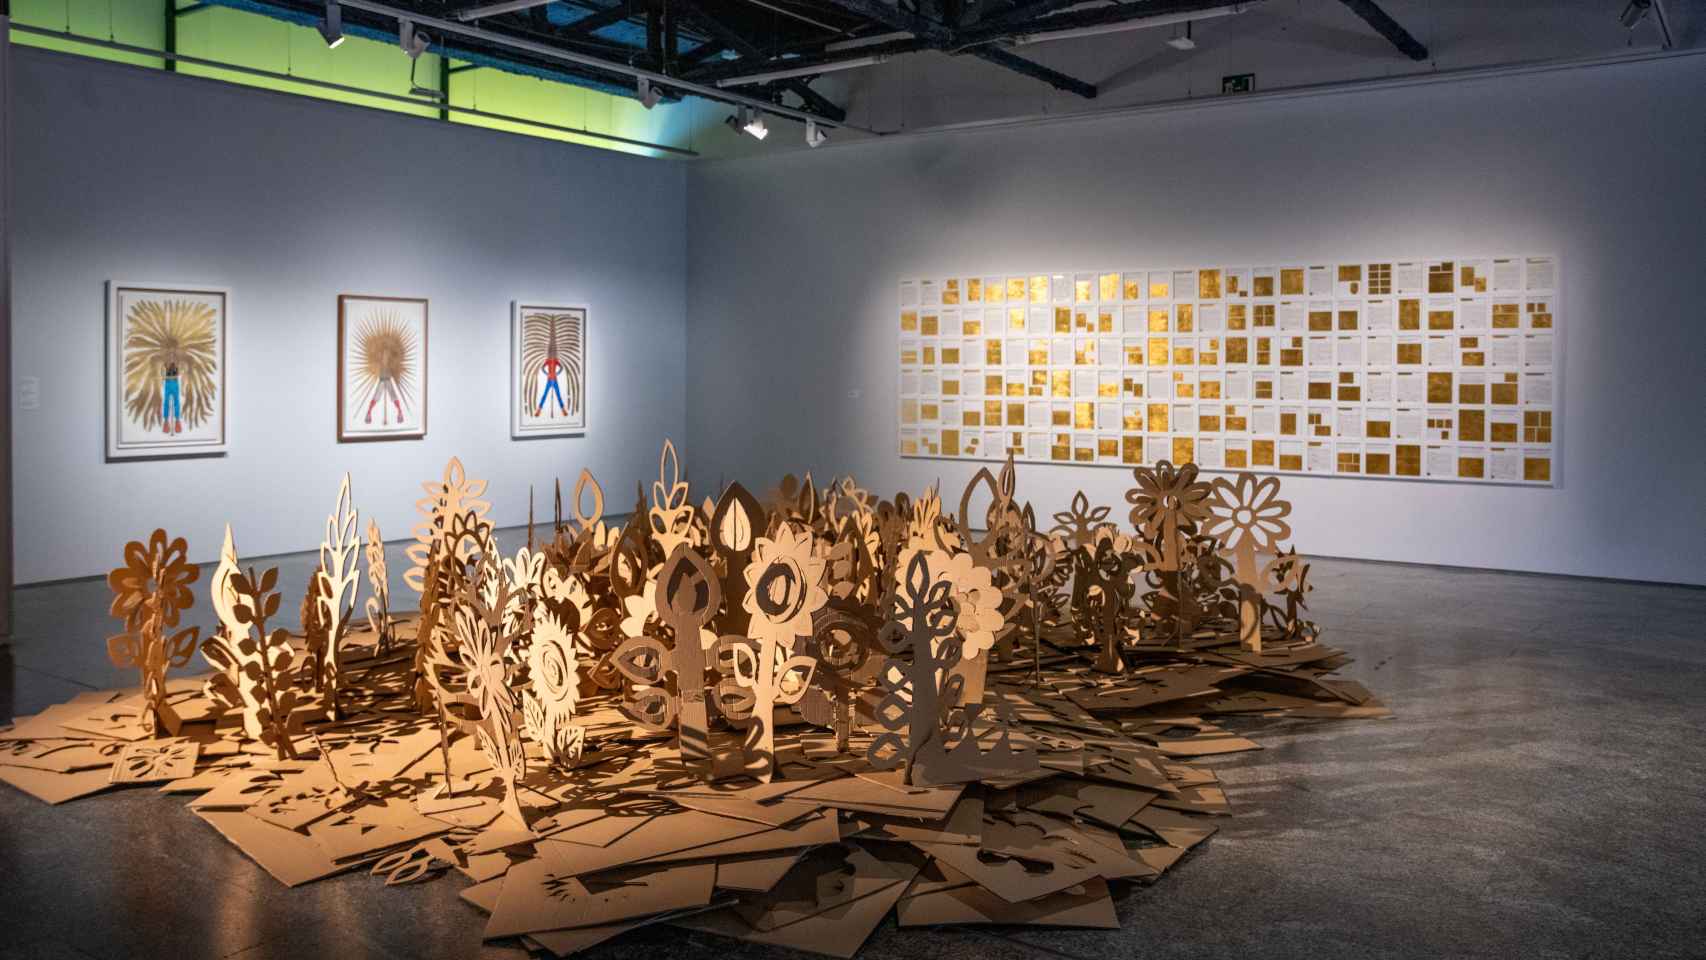 Detalle de la exposición en la sala de Arte de la Universidad Complutense de Madrid.